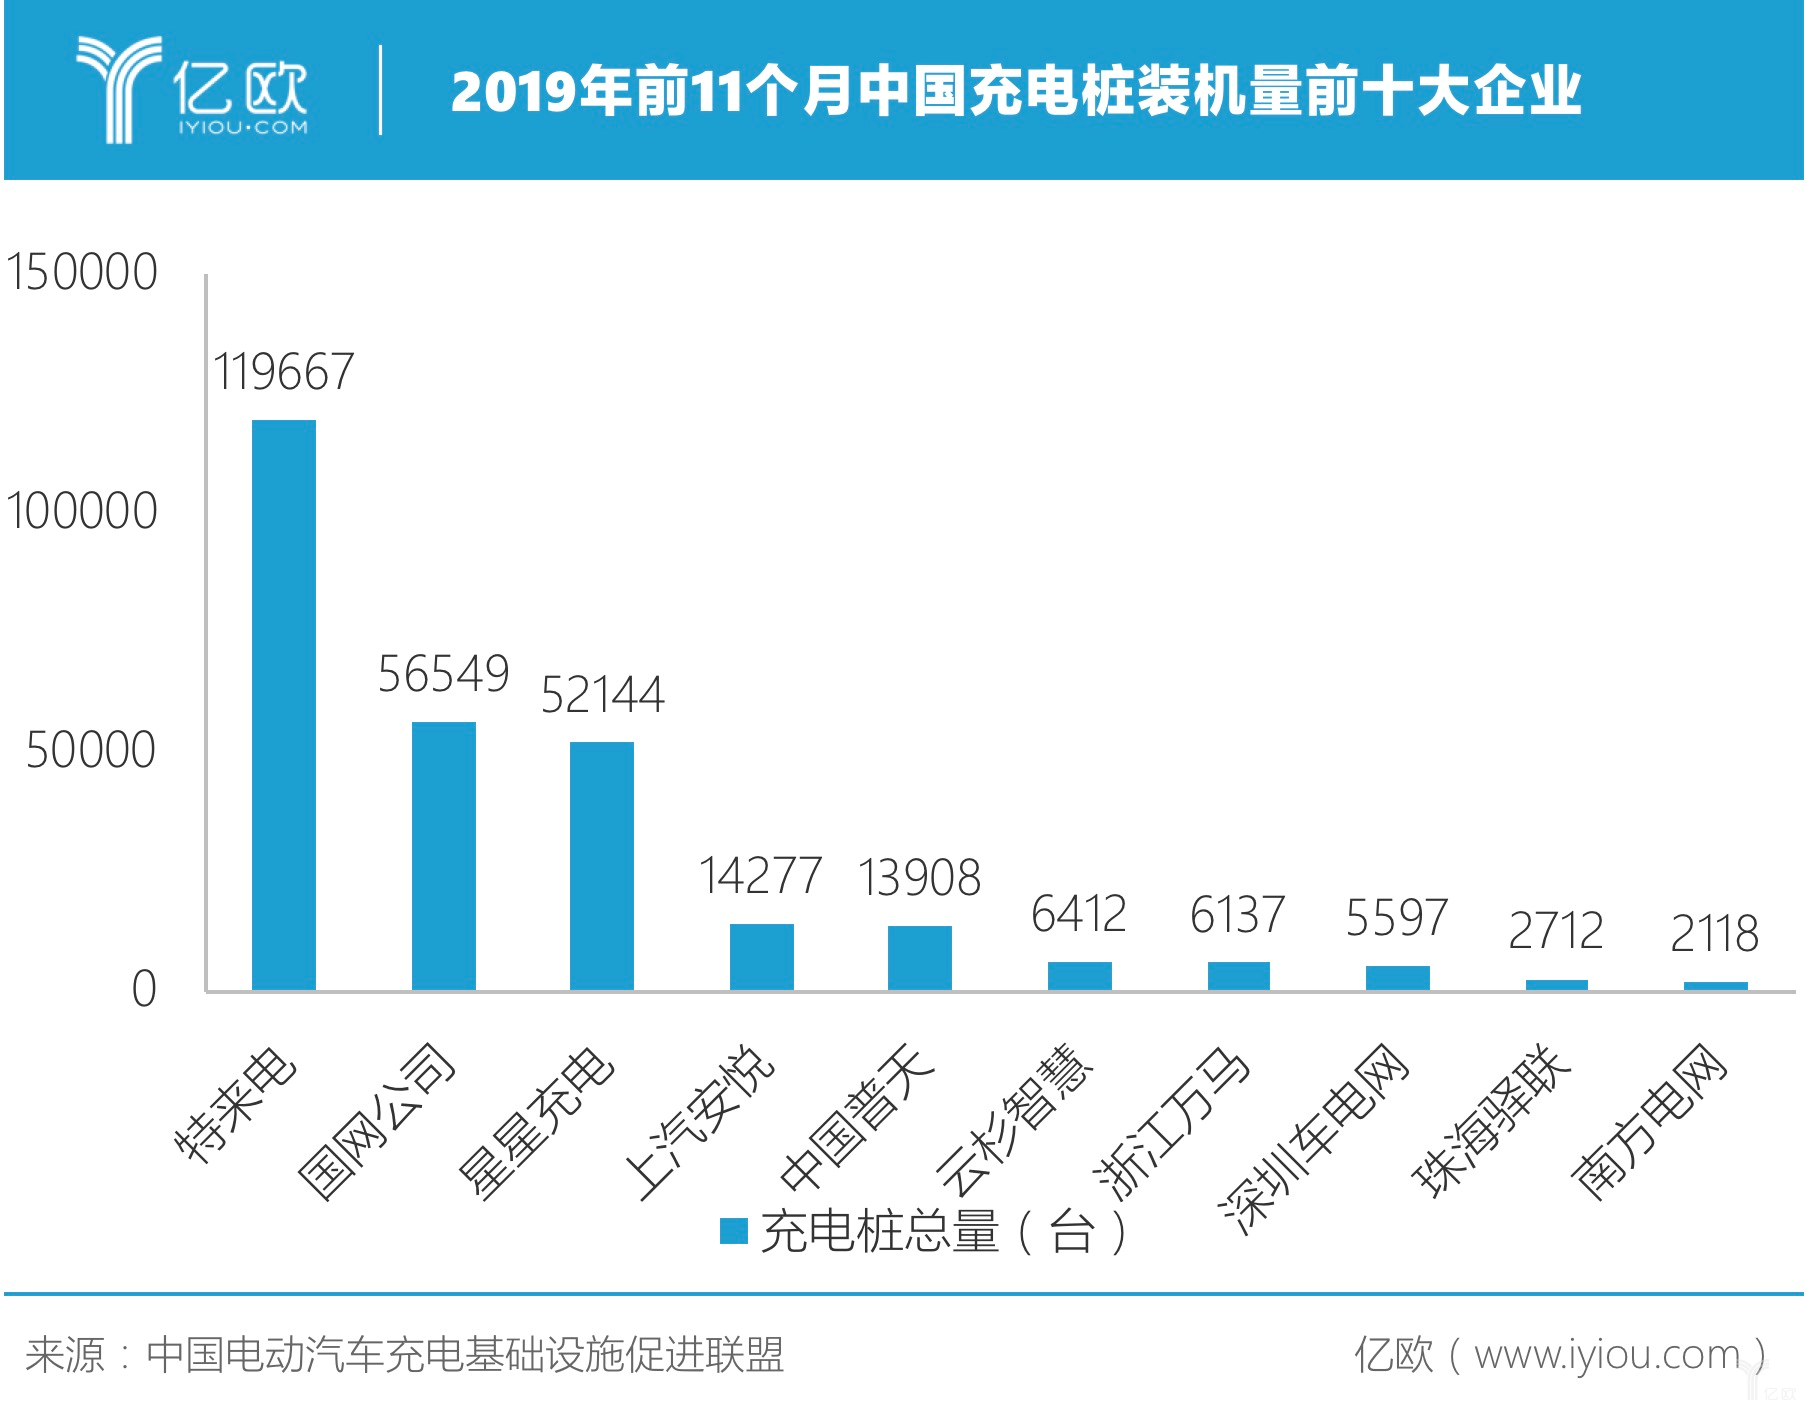 2019年前11个月中国充电桩装机量前十大企业